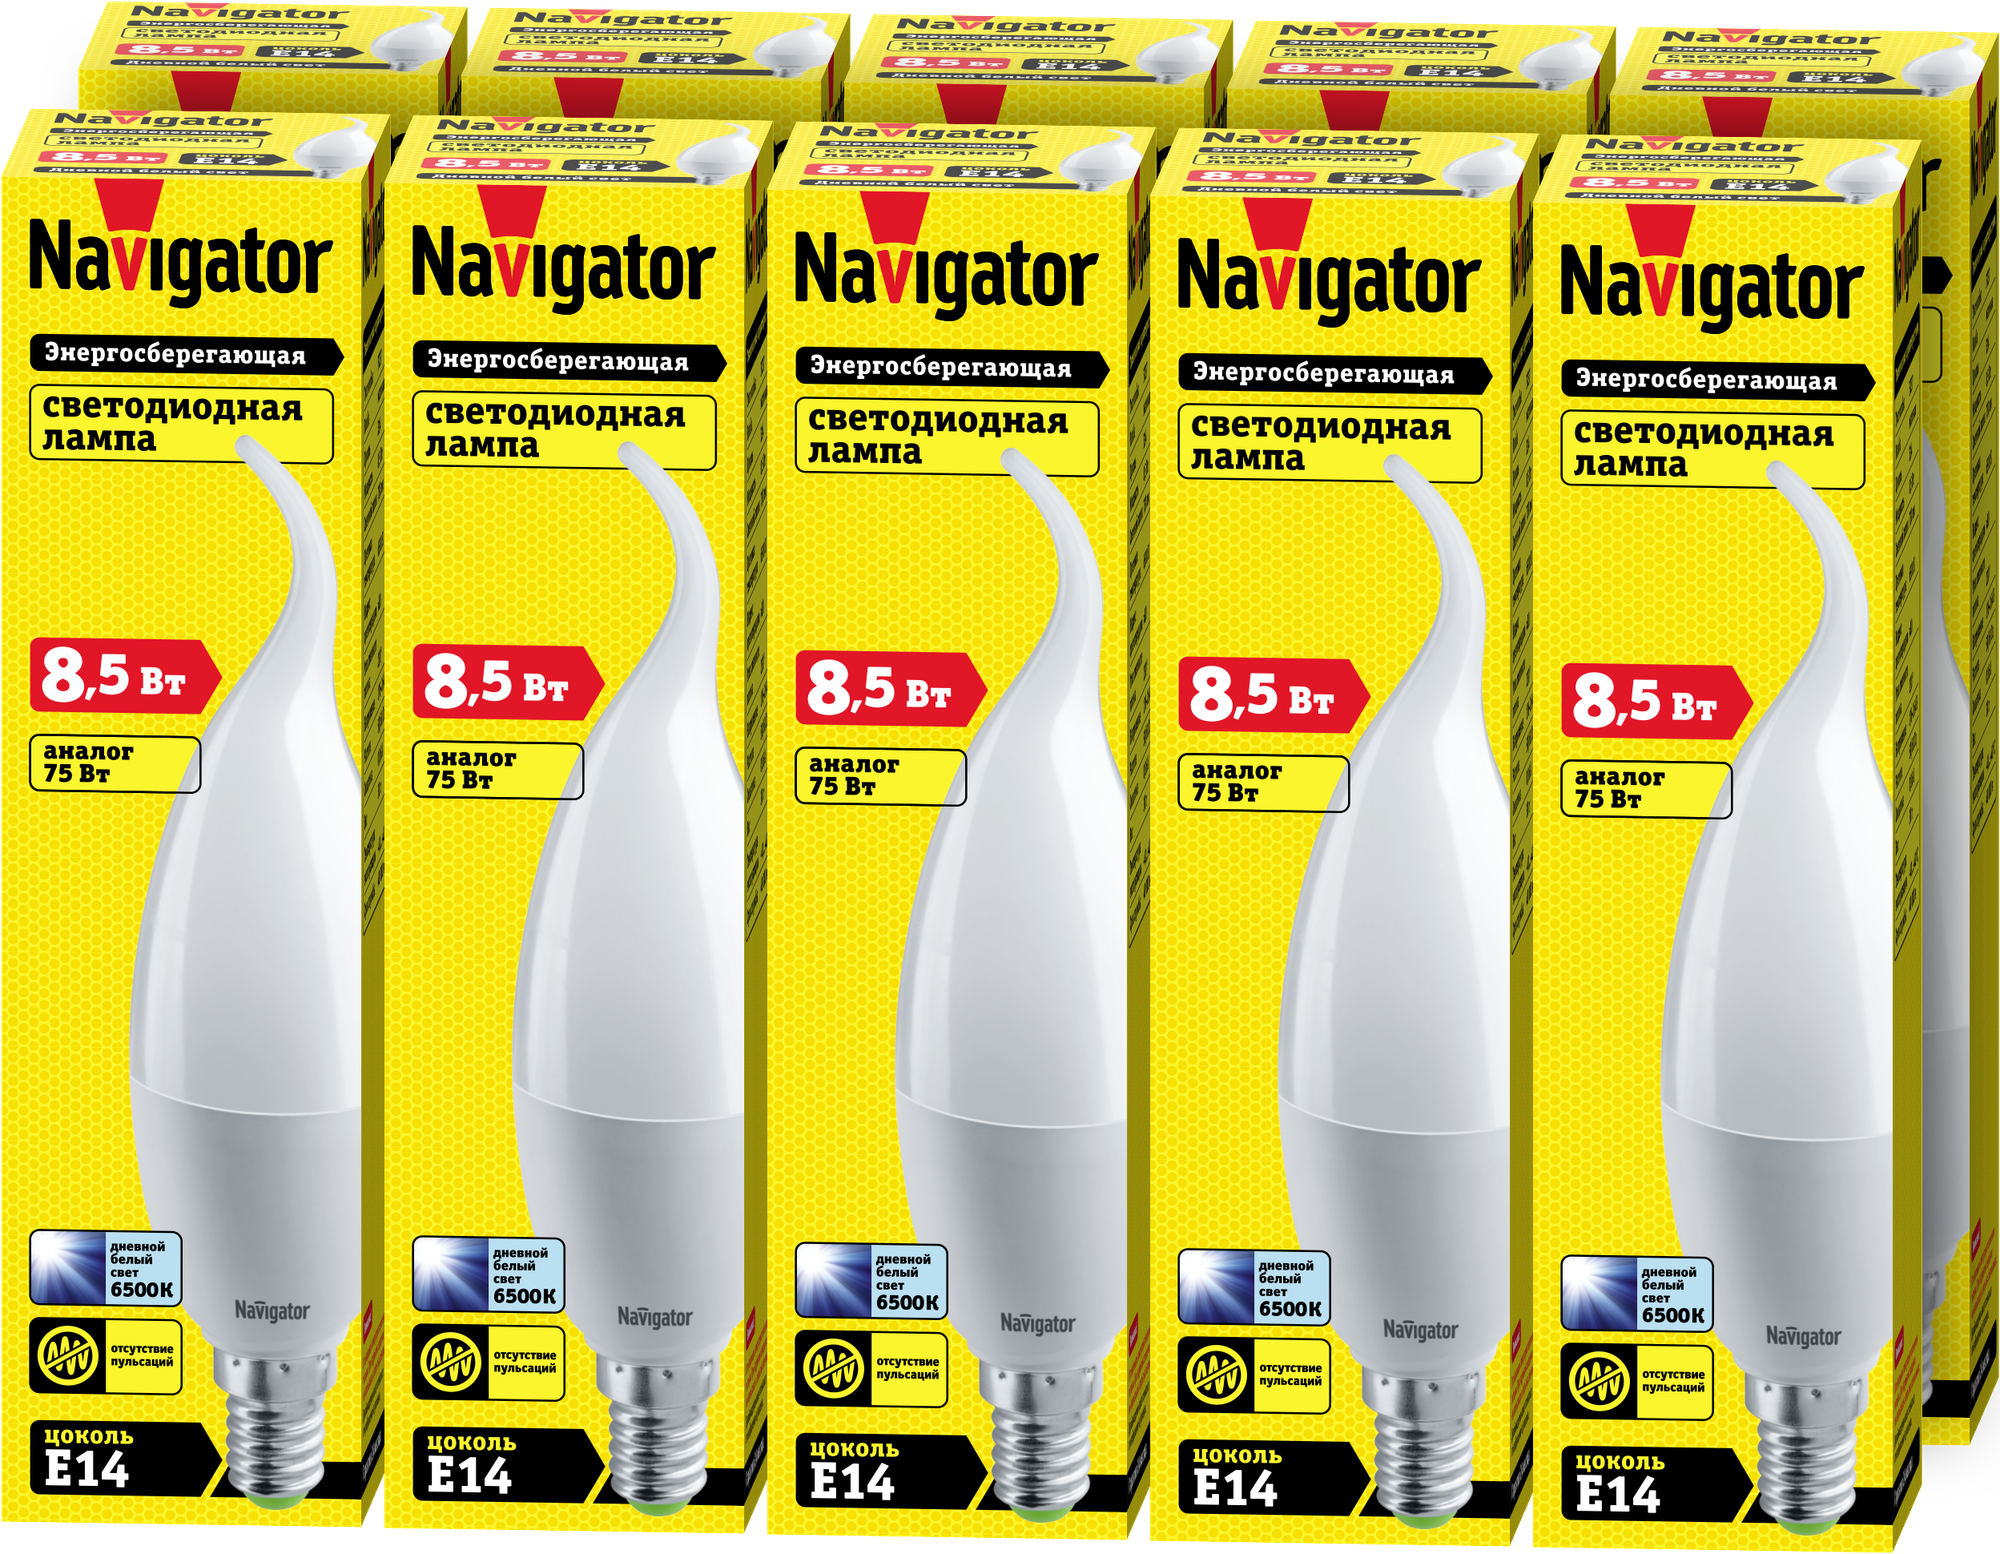 Светодиодная лампа Navigator 61 332, 8.5 Вт, свеча на ветру Е14, холодного света 6500К, упаковка 10 шт.